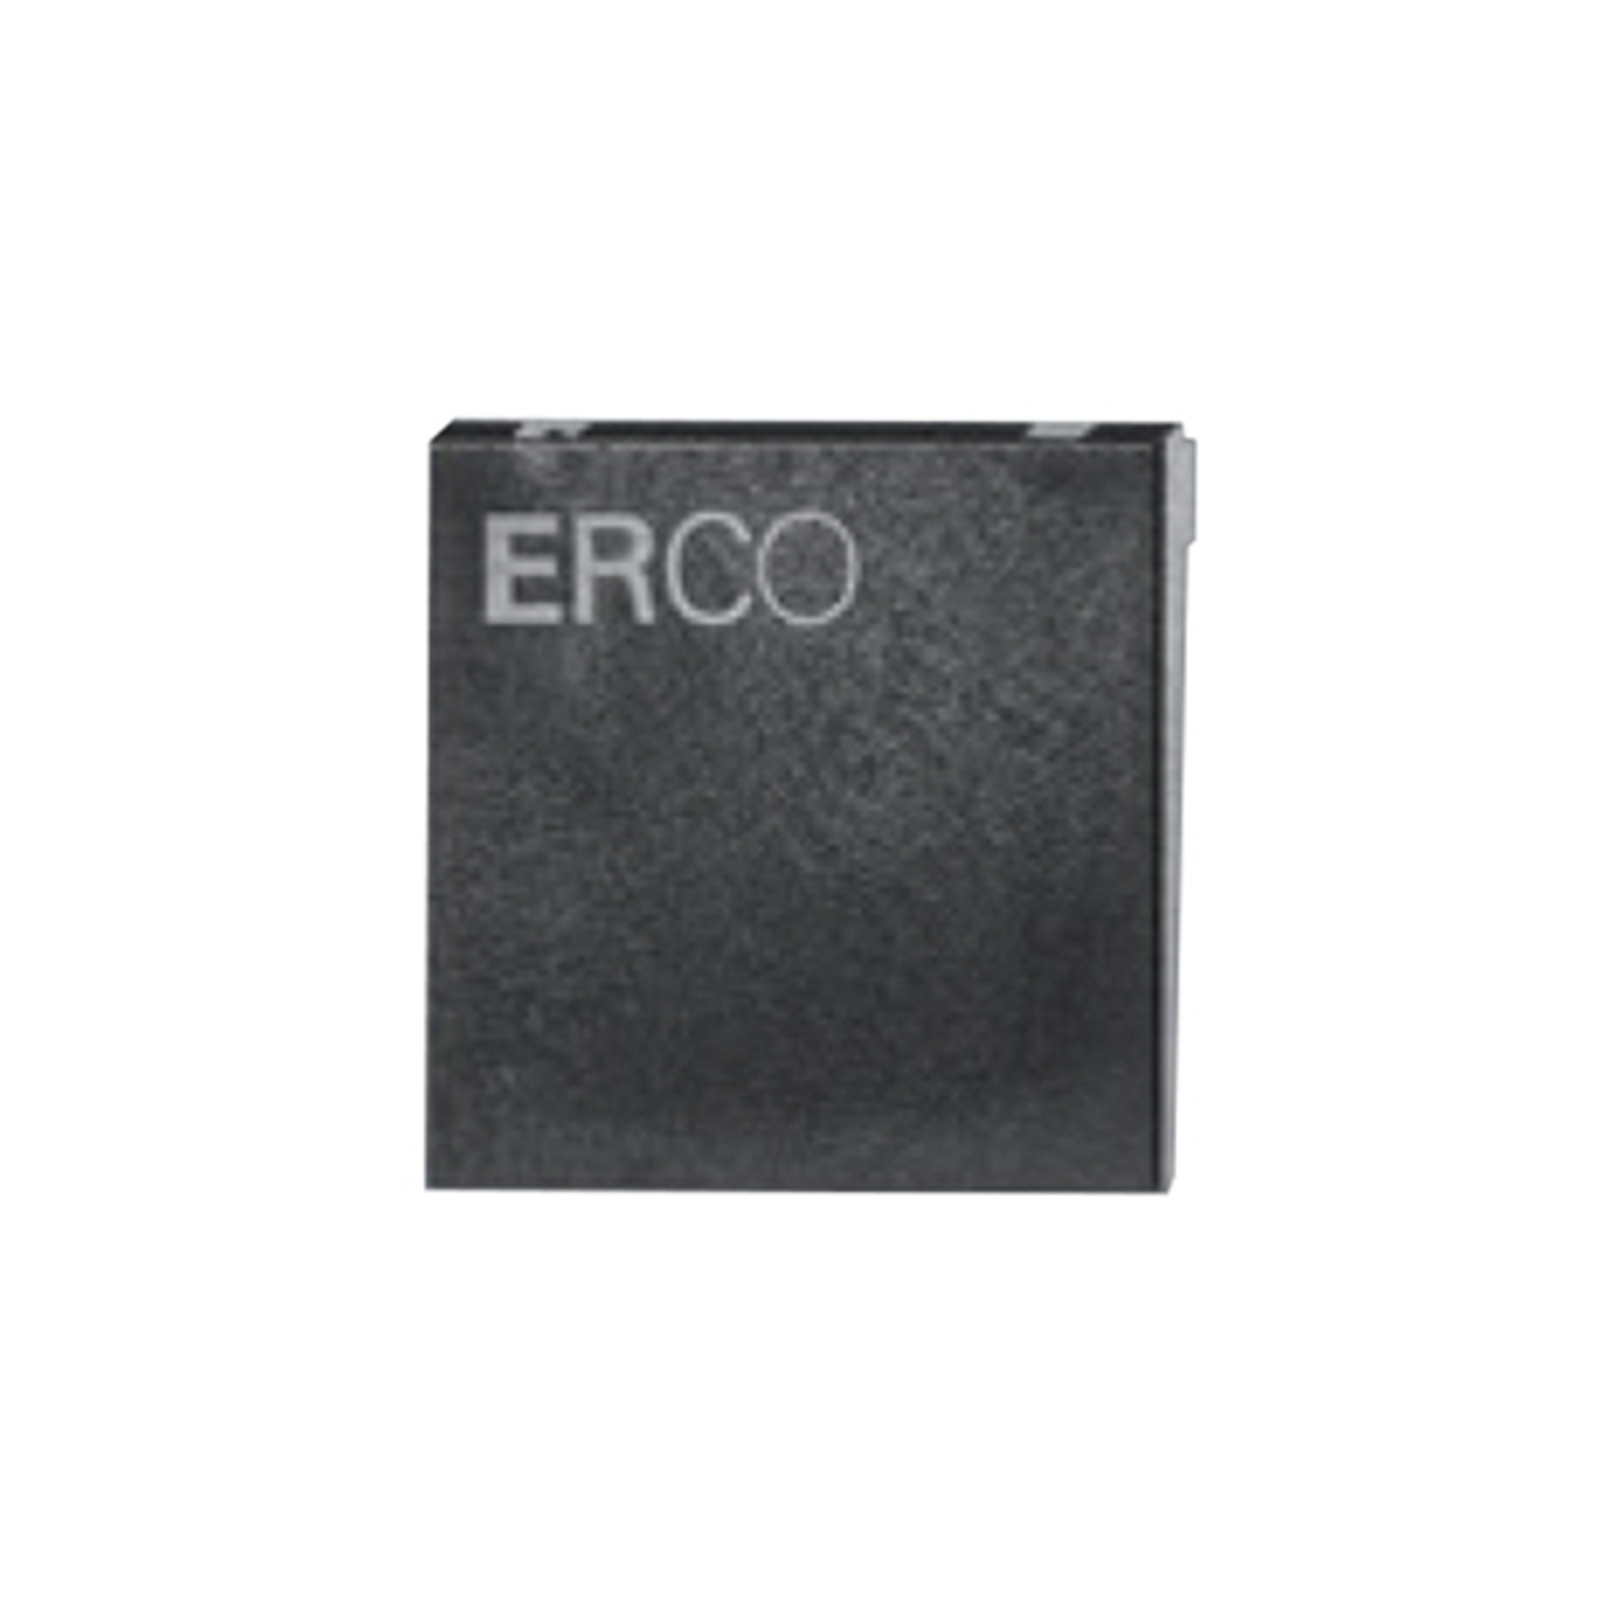 ERCO sluttplate for 3-fase skinne, svart